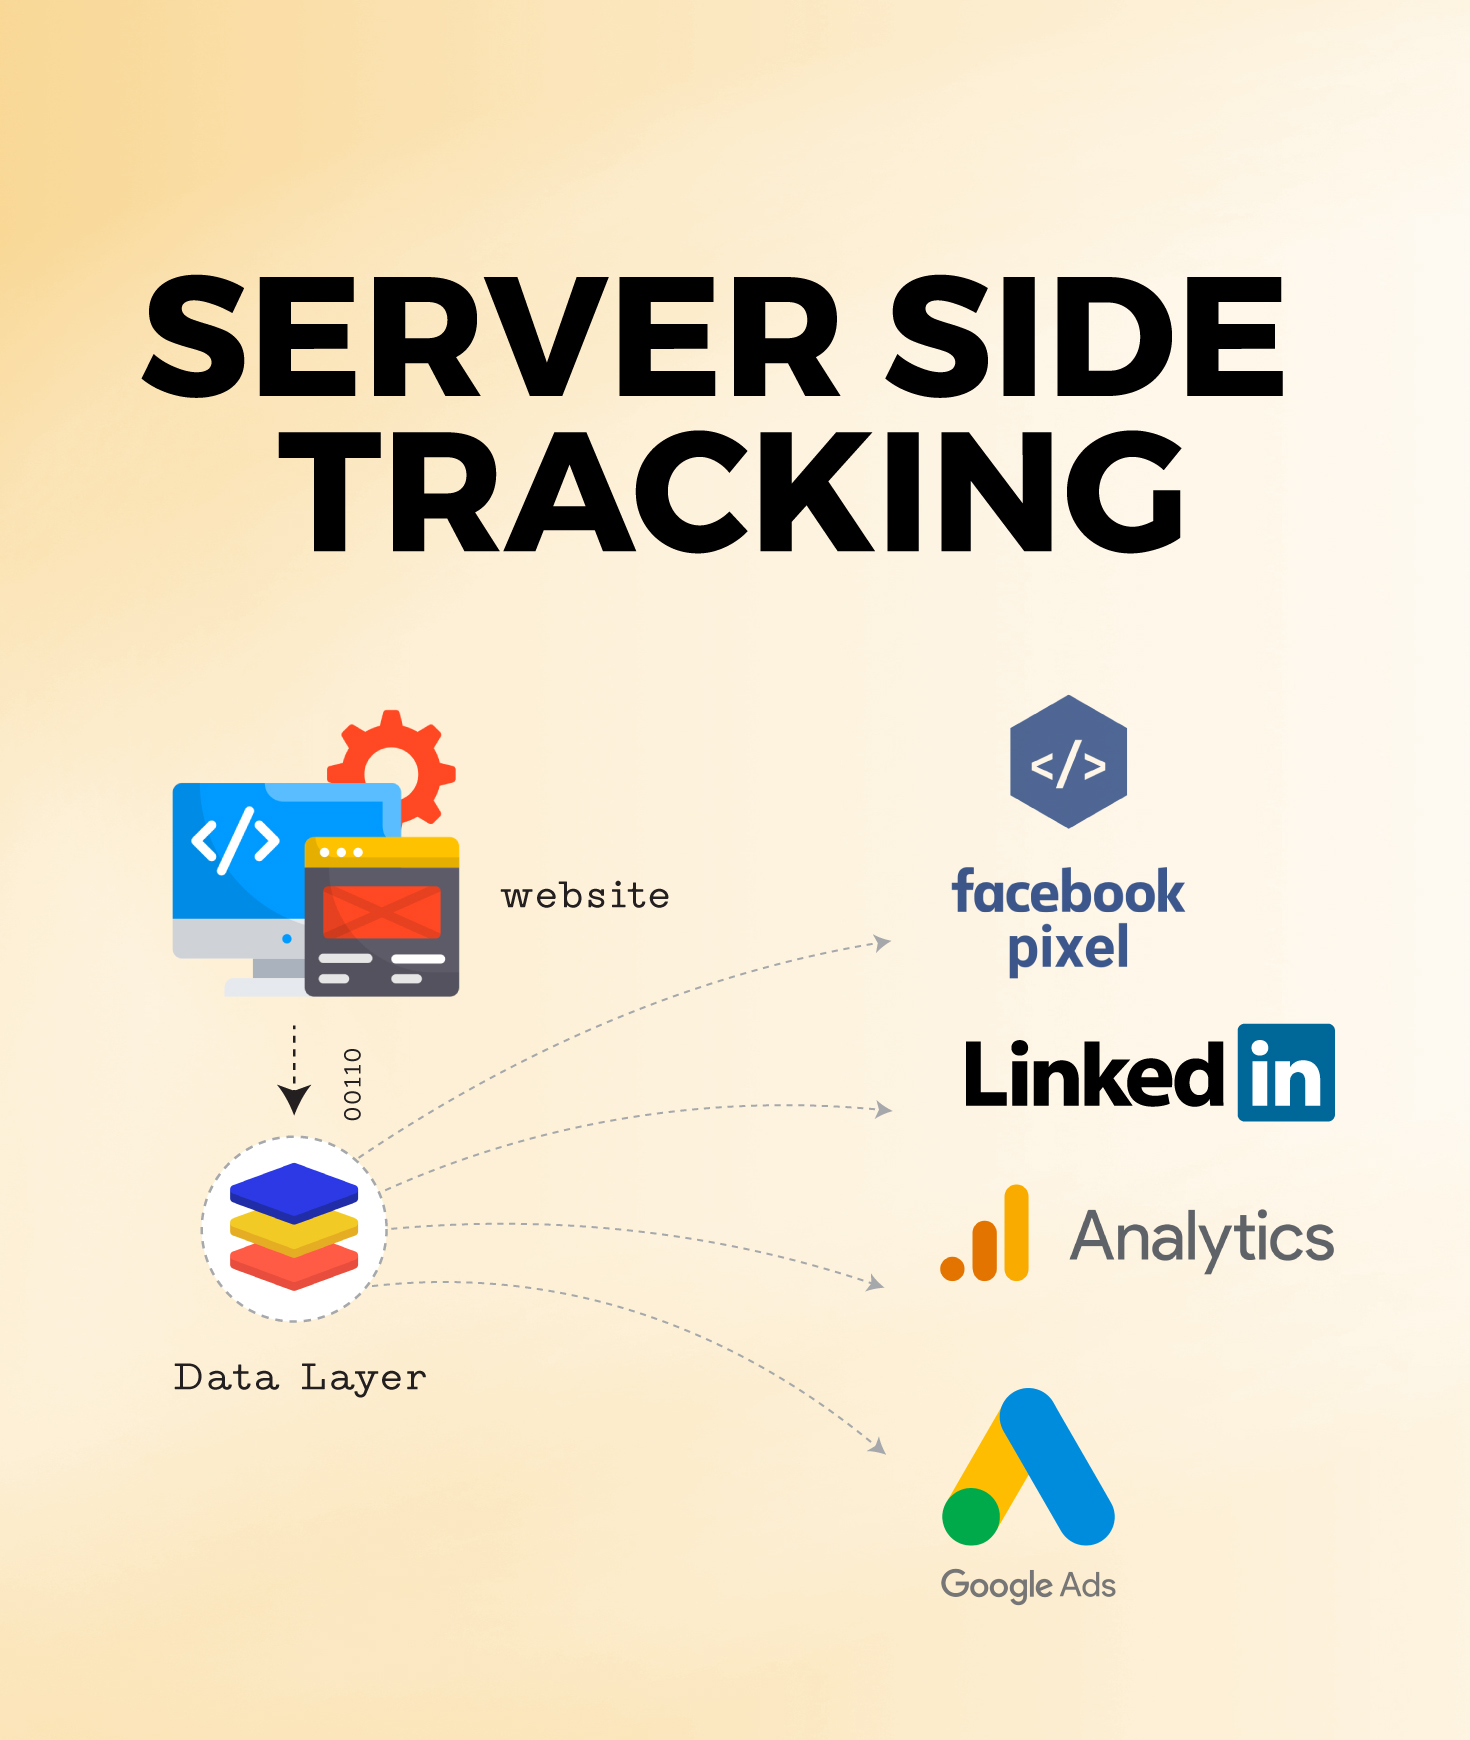 Server Side Tracking